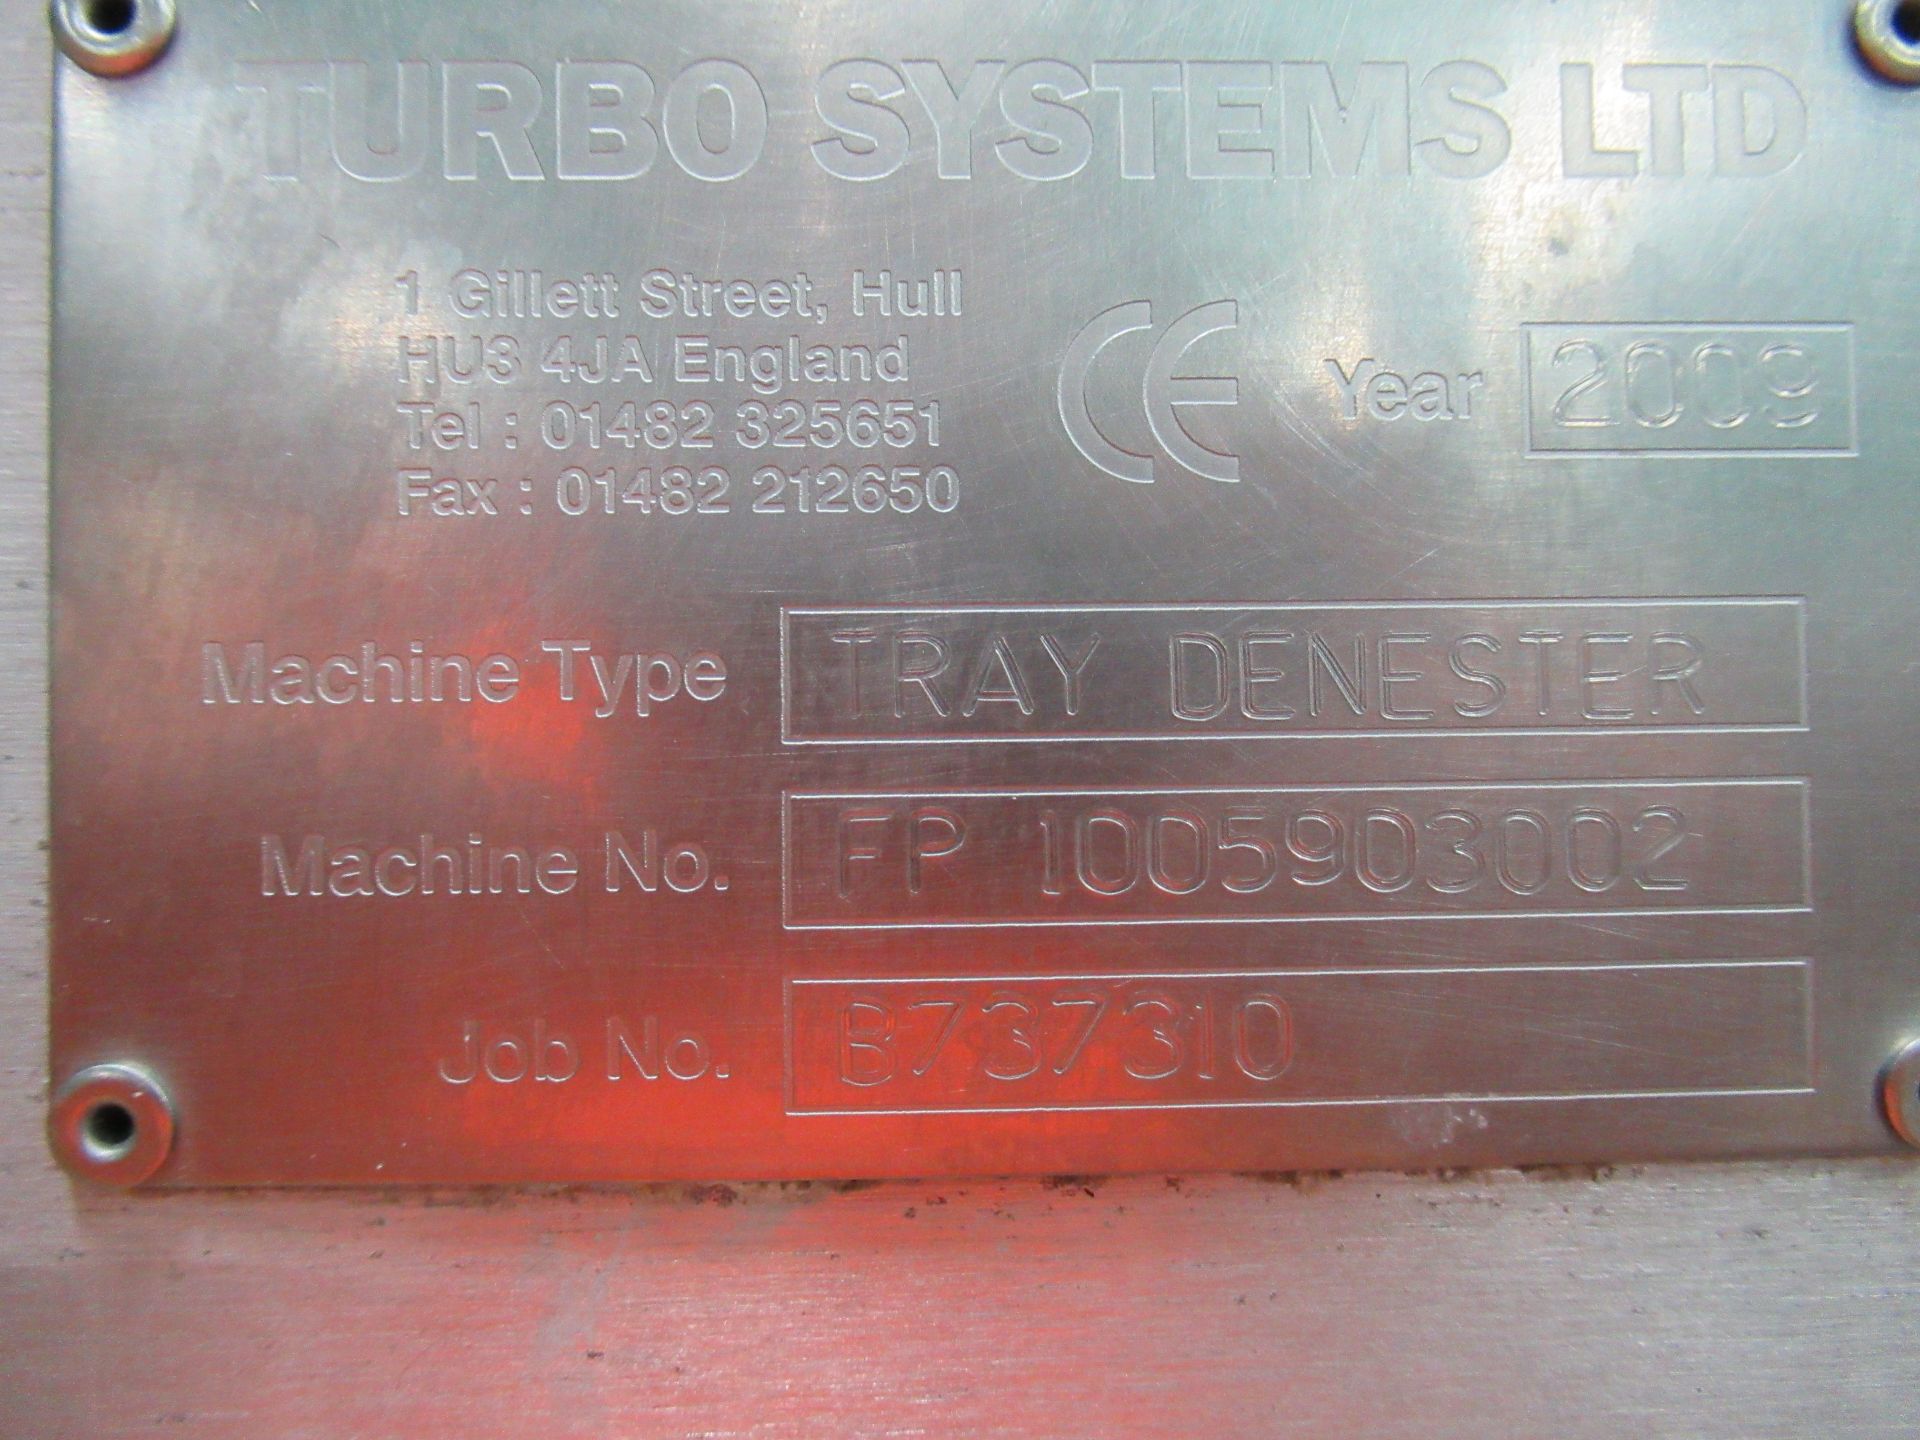 Turbo Systems Ltd tray denester. Serial no: FP1005903002 (2009) 2 row feeder with E150 keypad ( - Image 8 of 9